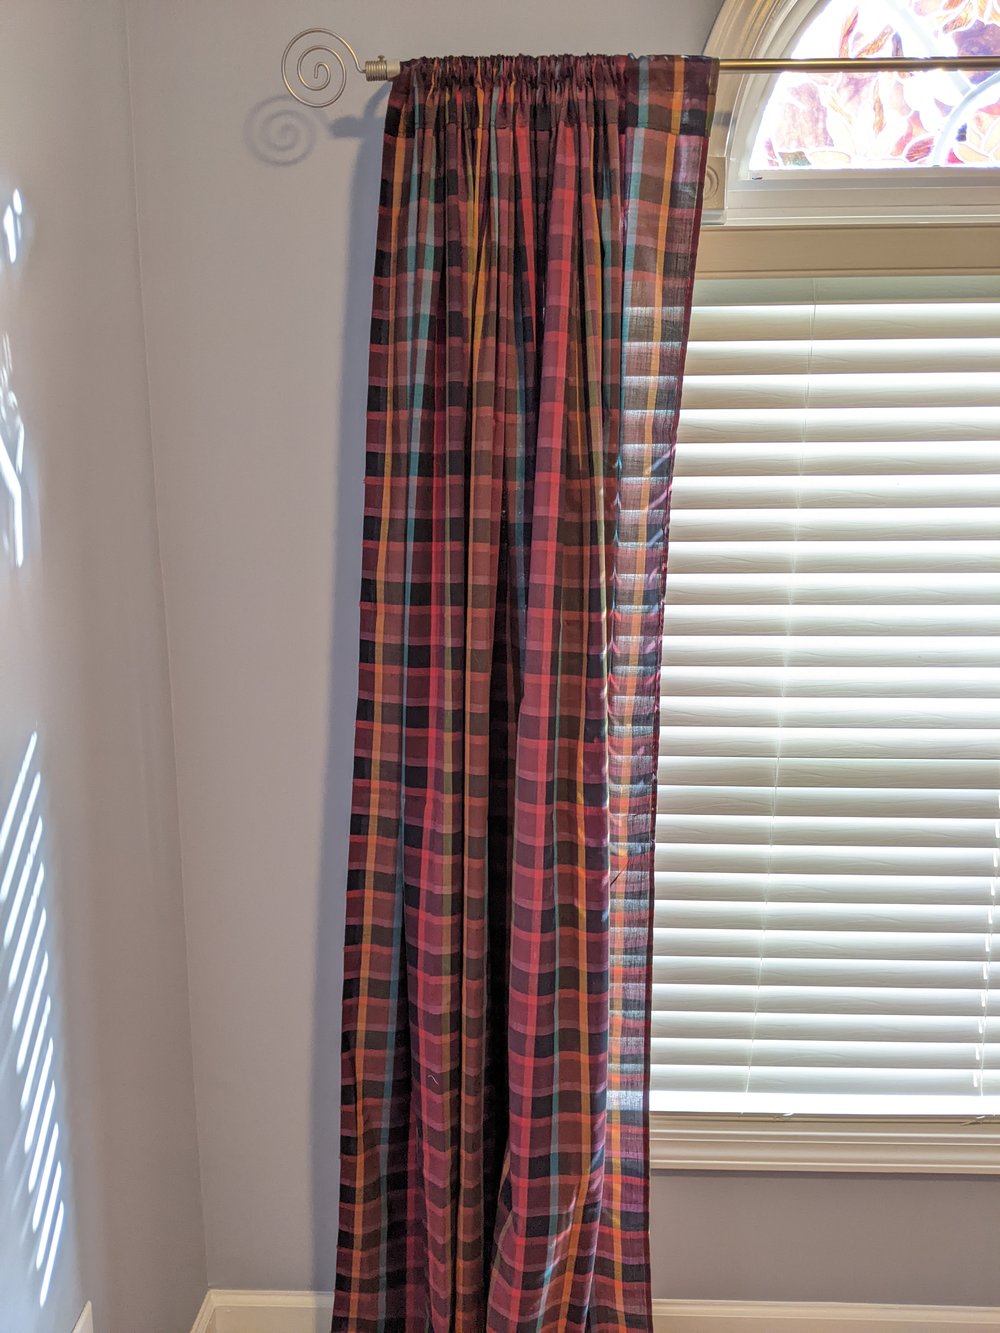 Thrifted curtain on rod.jpg